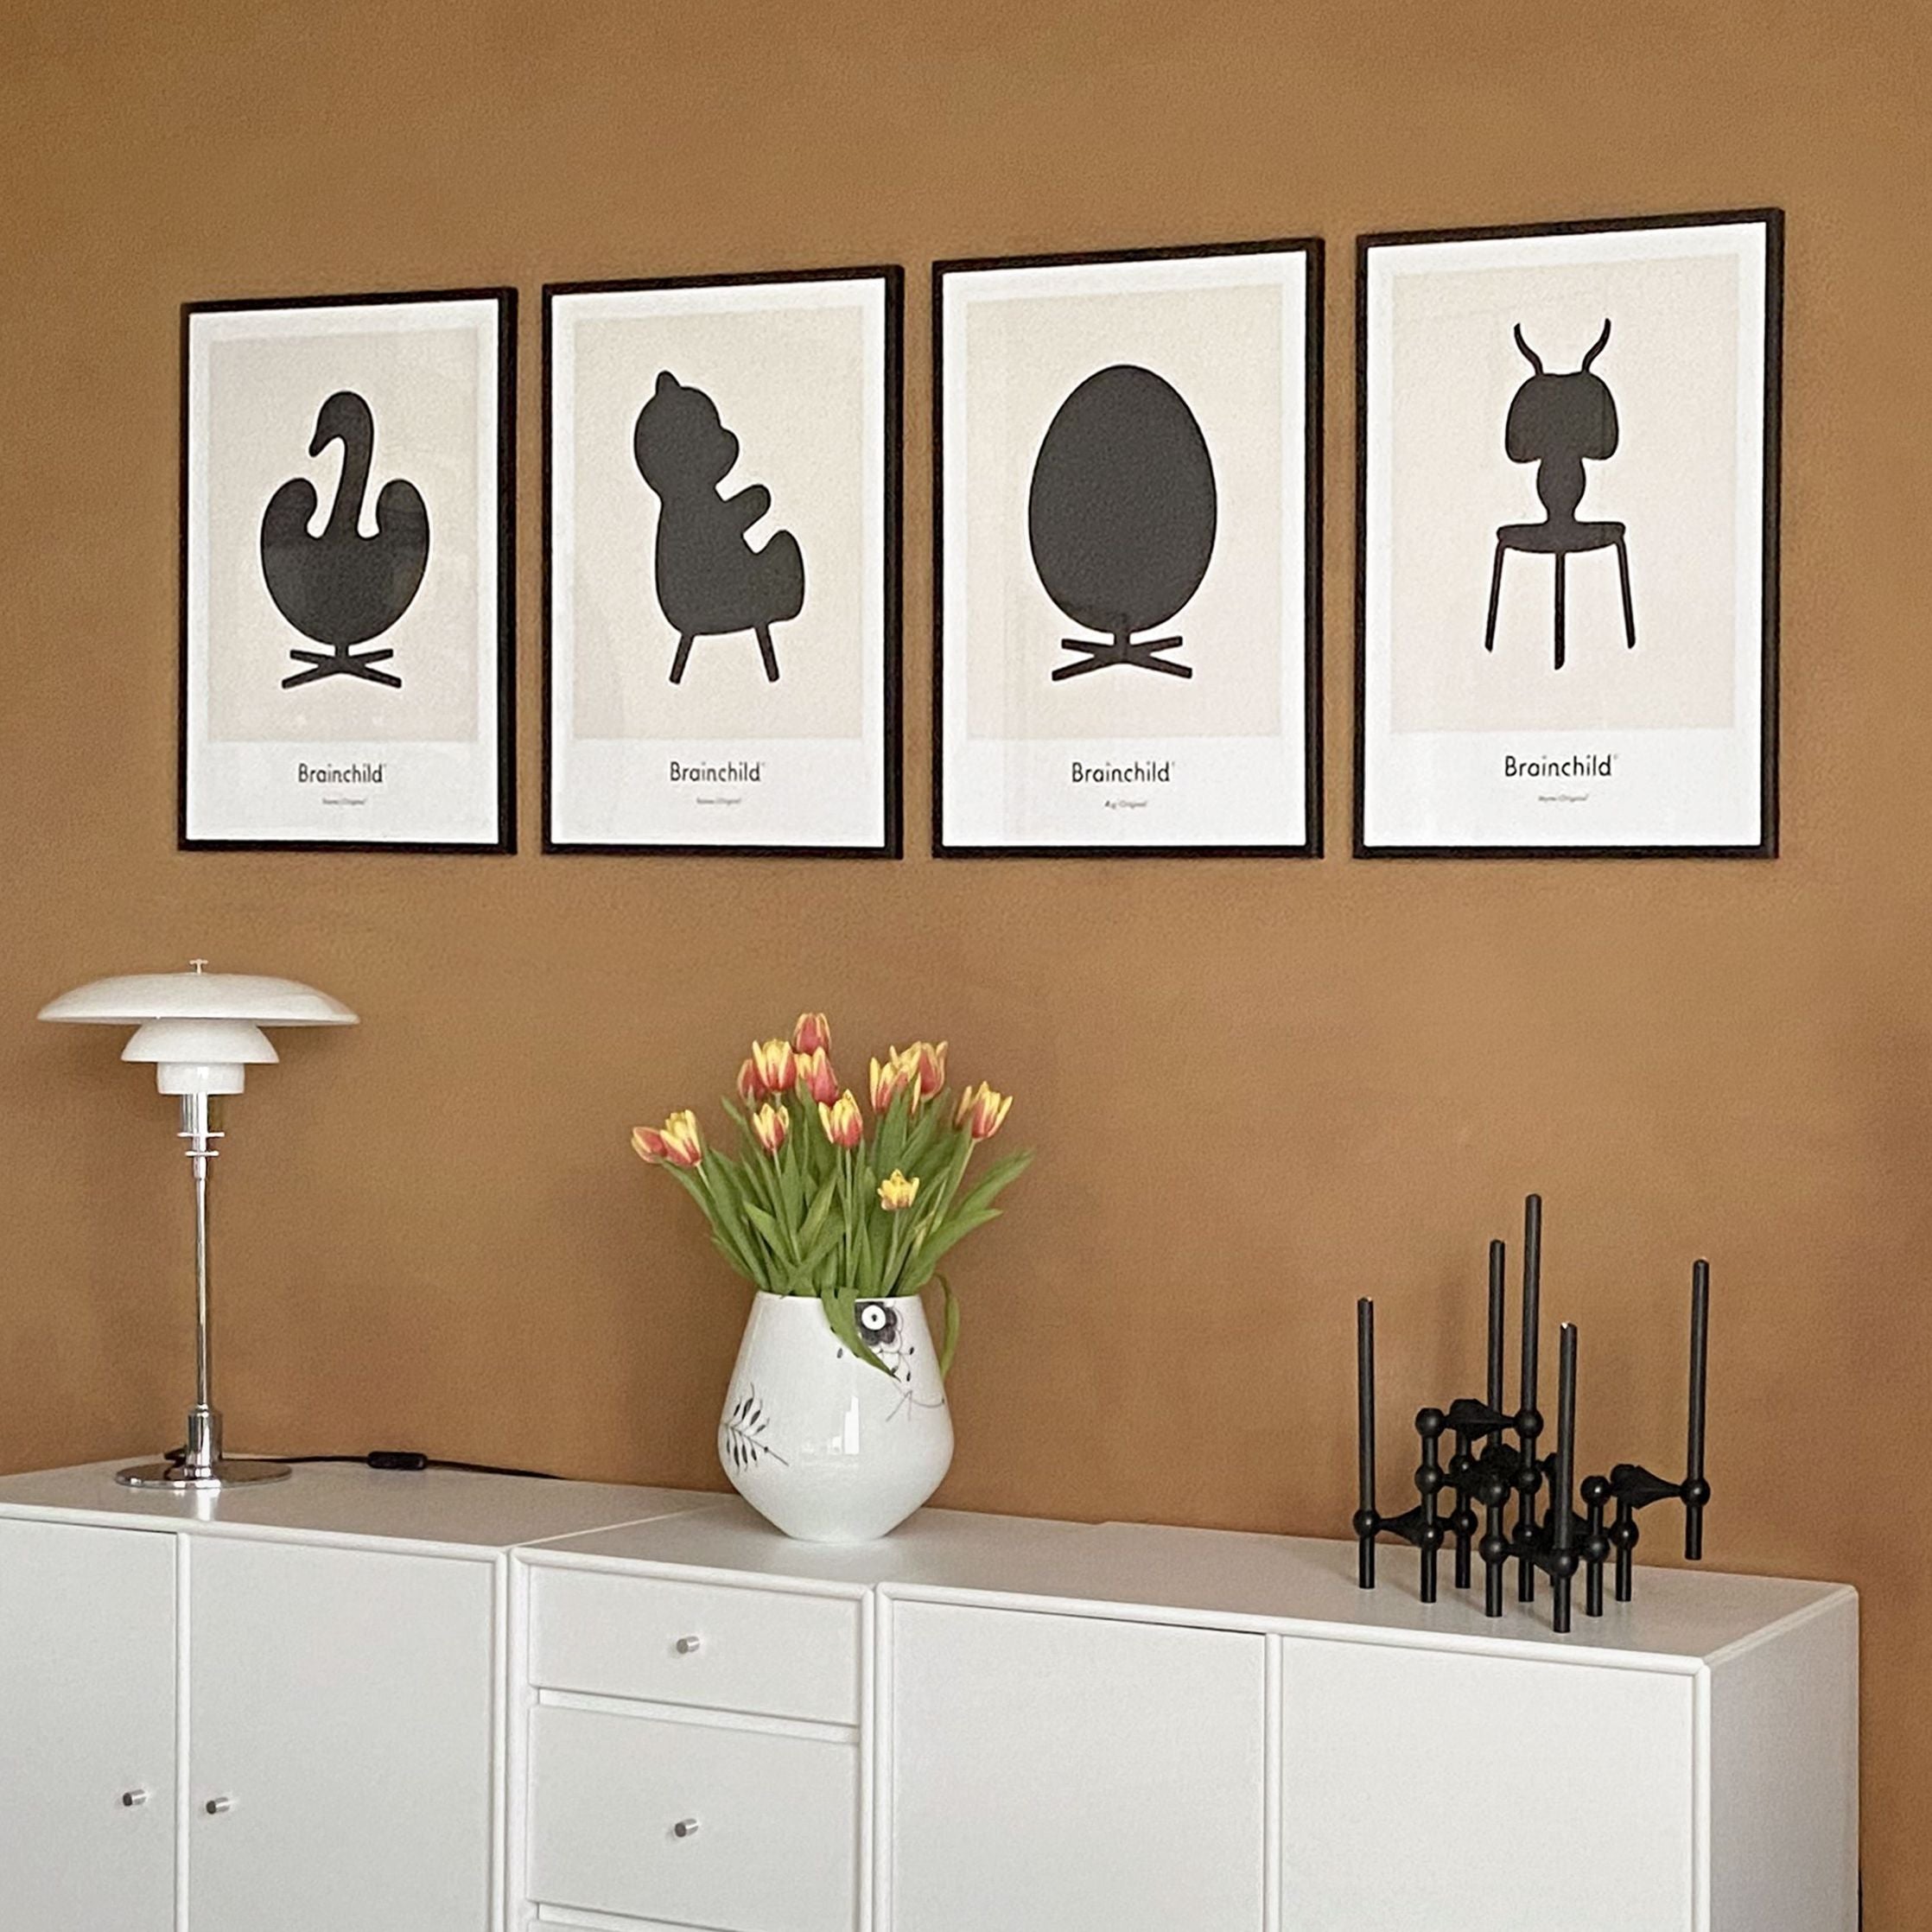 Brainchild Swan Design Icon Poster ingen ram A5, grå